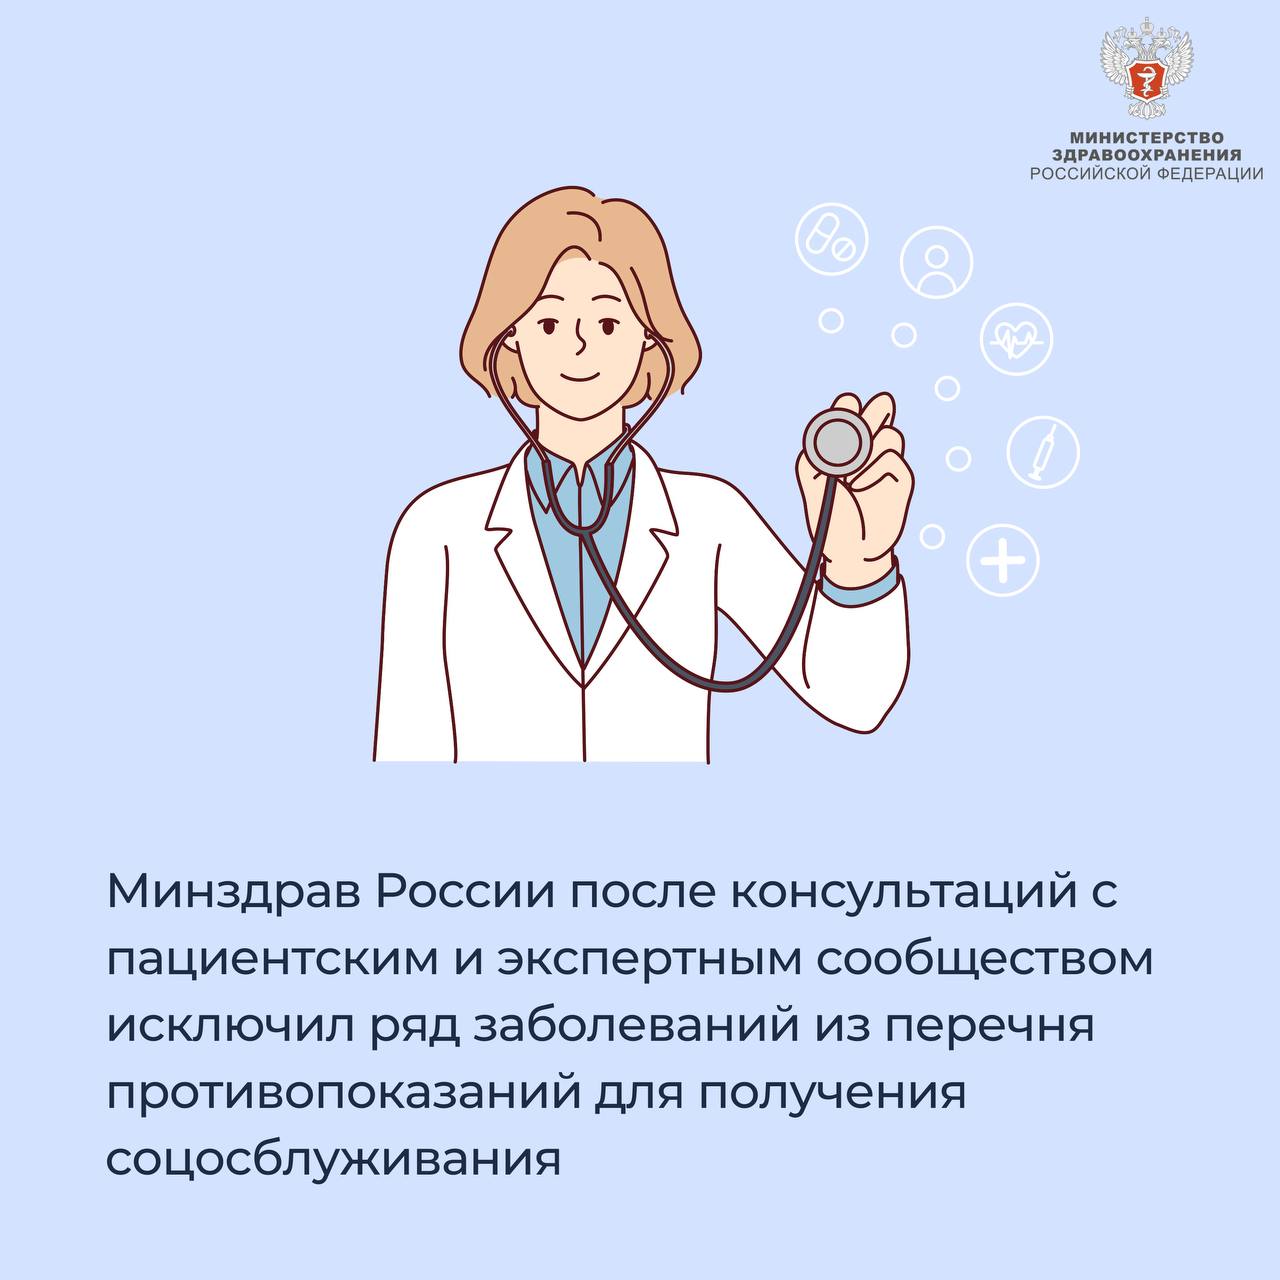 Минздрав России исключил ряд заболеваний из перечня противопоказаний для получения соцосблуживания